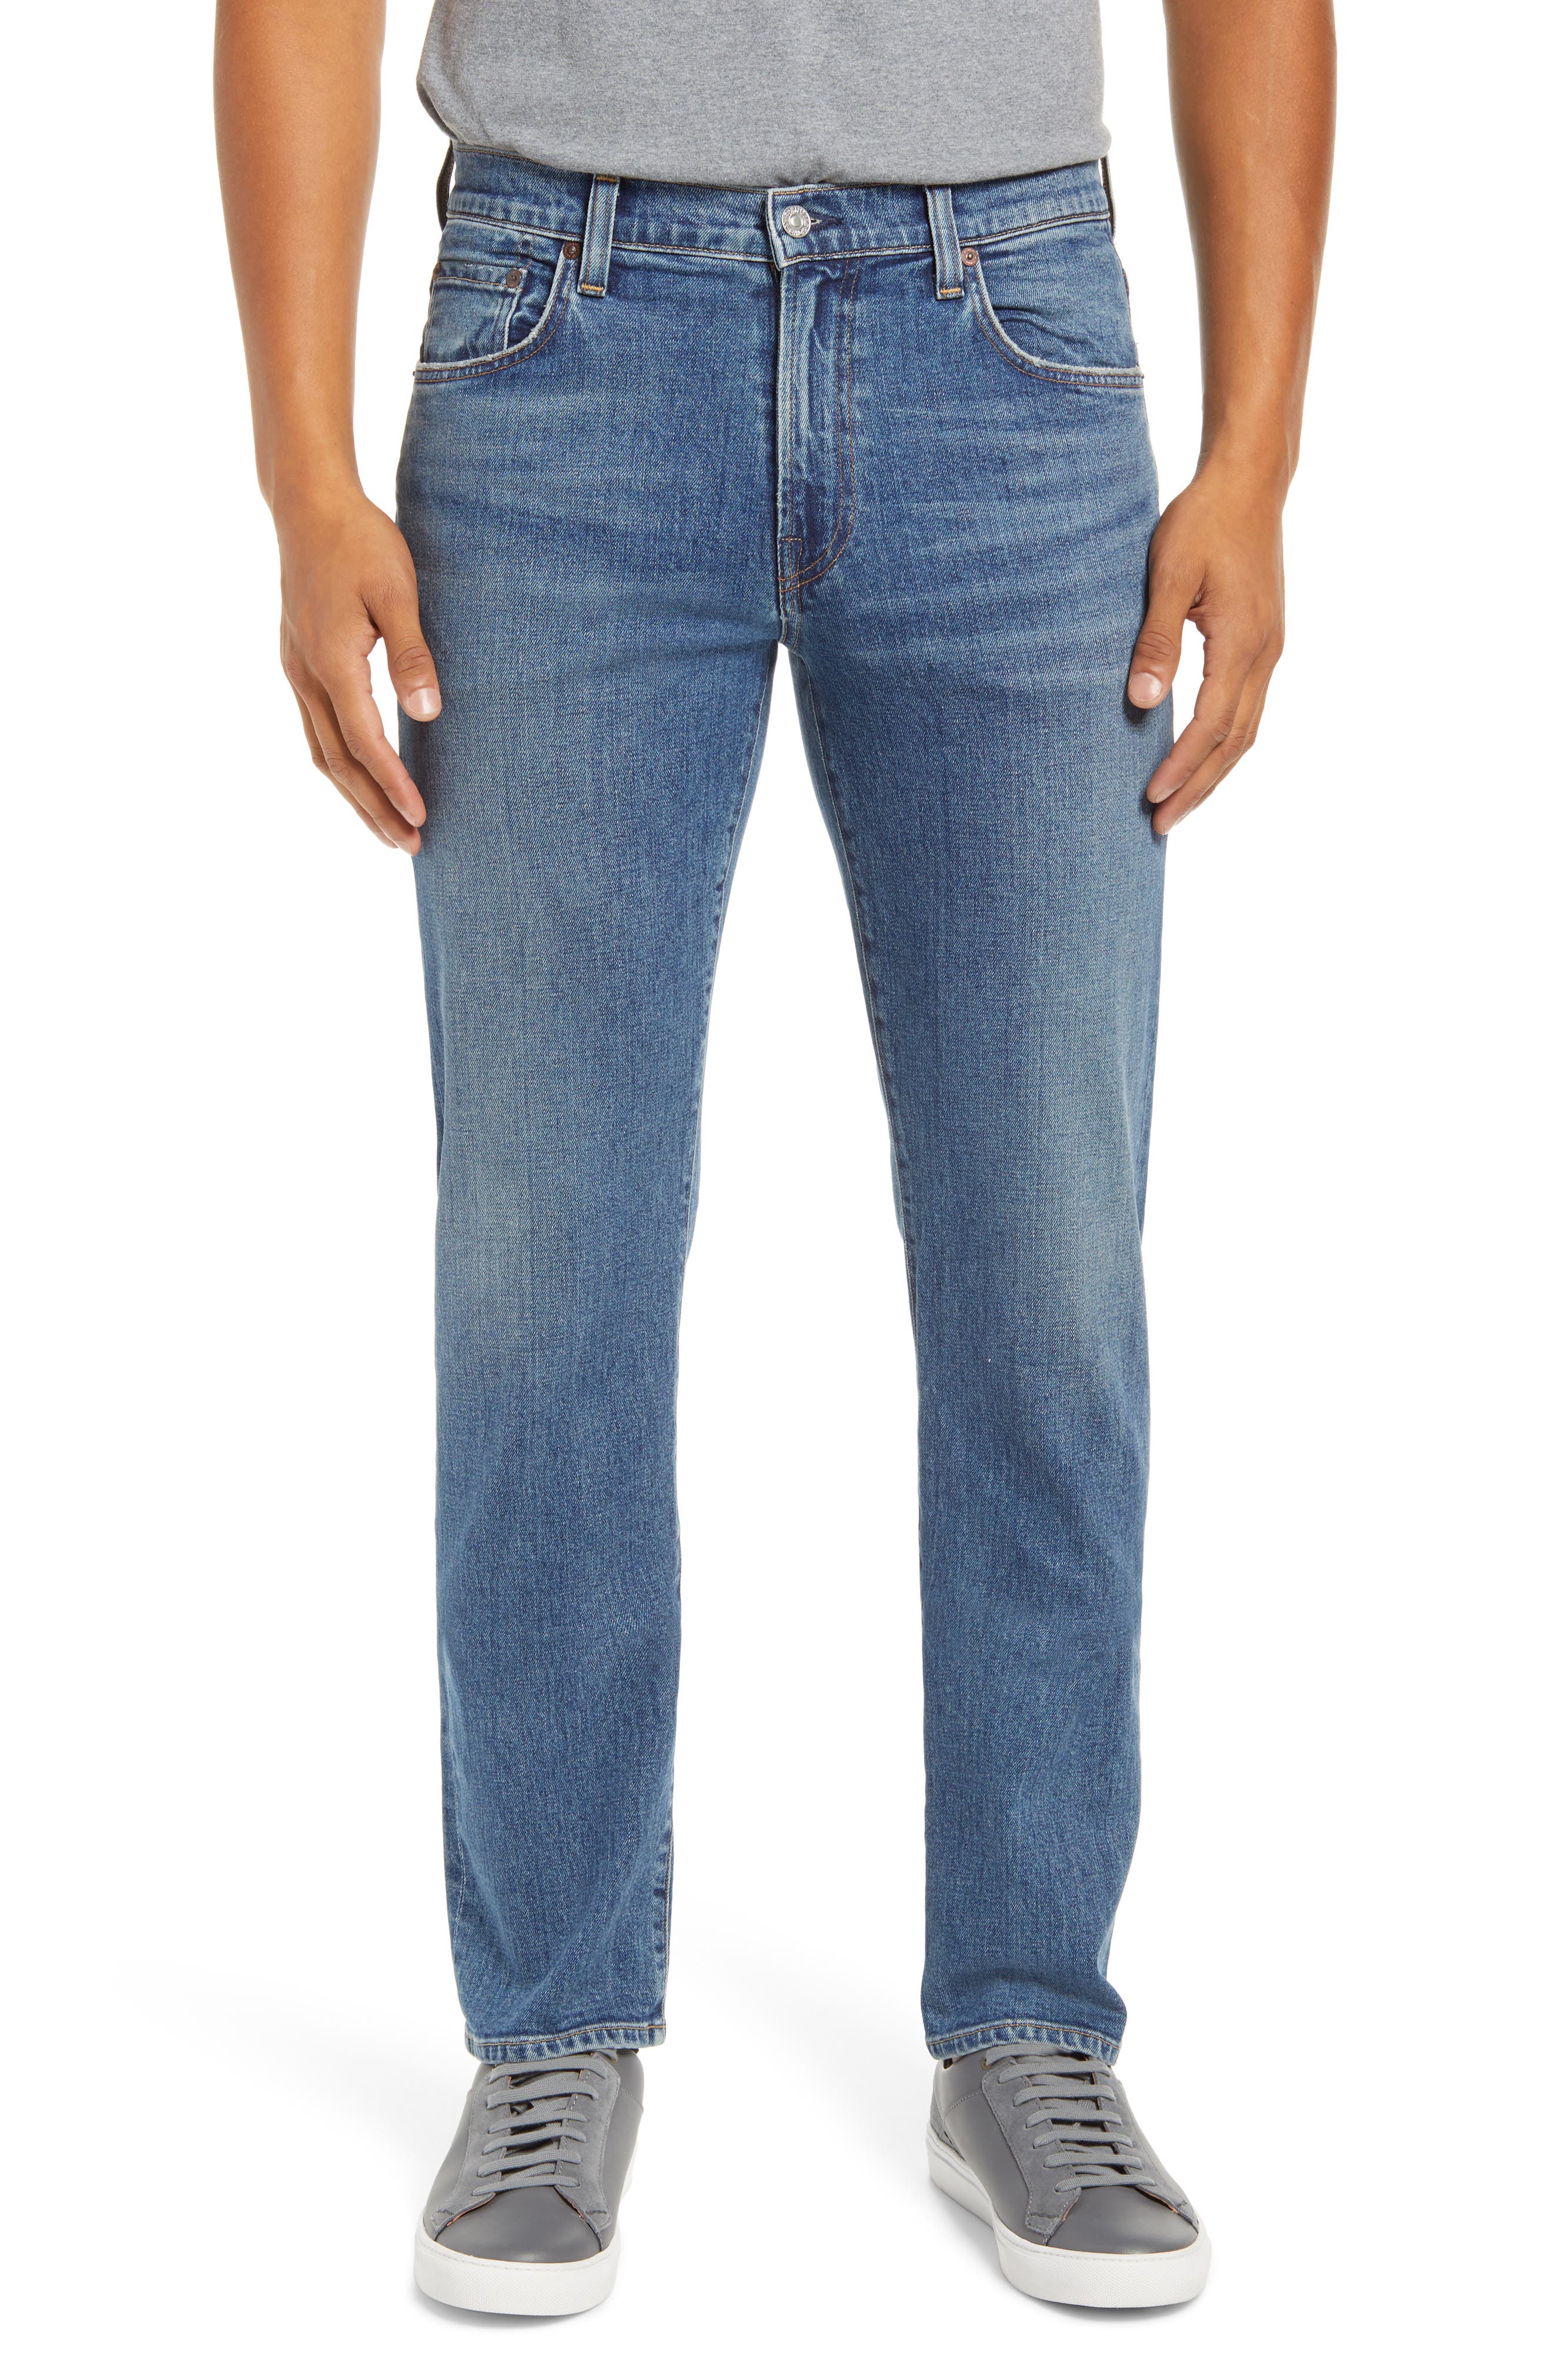 mens designer skinny jeans sale